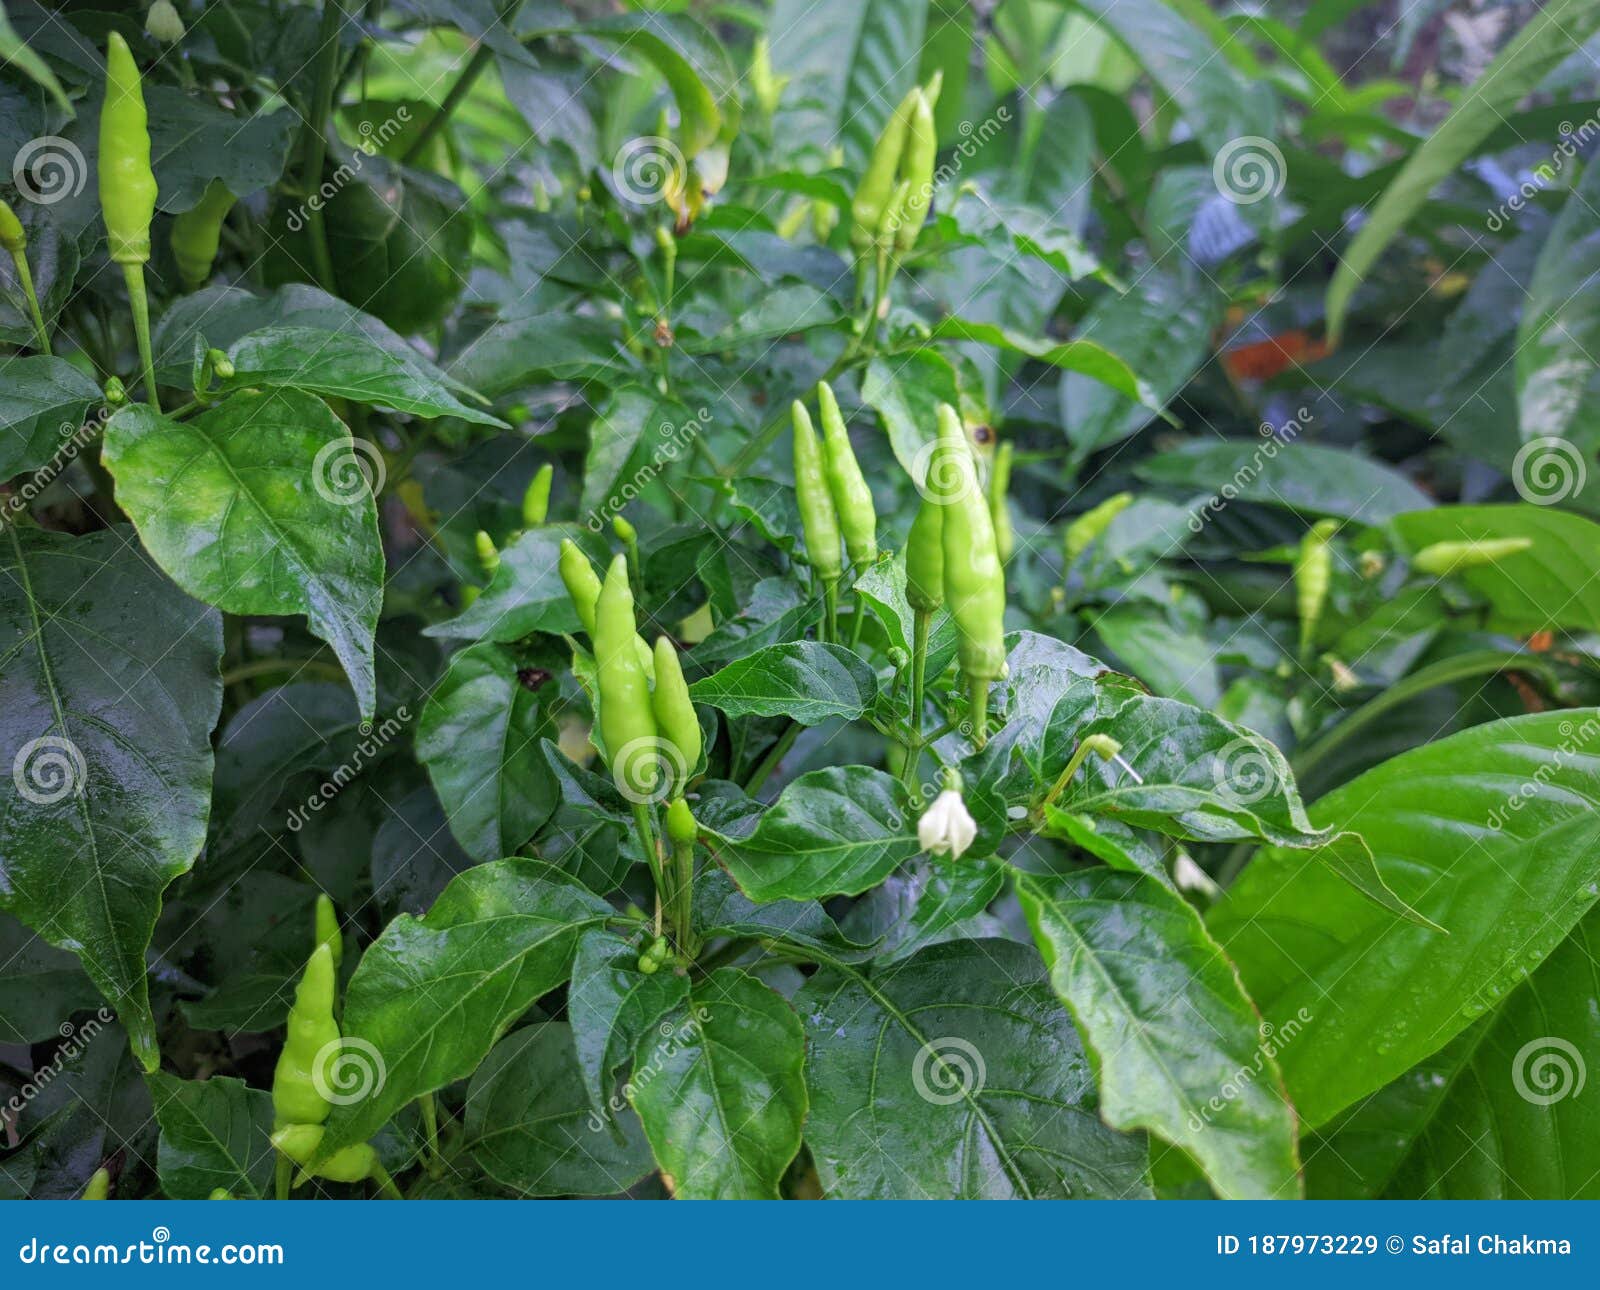 green chili mirchi around the leaf in garden